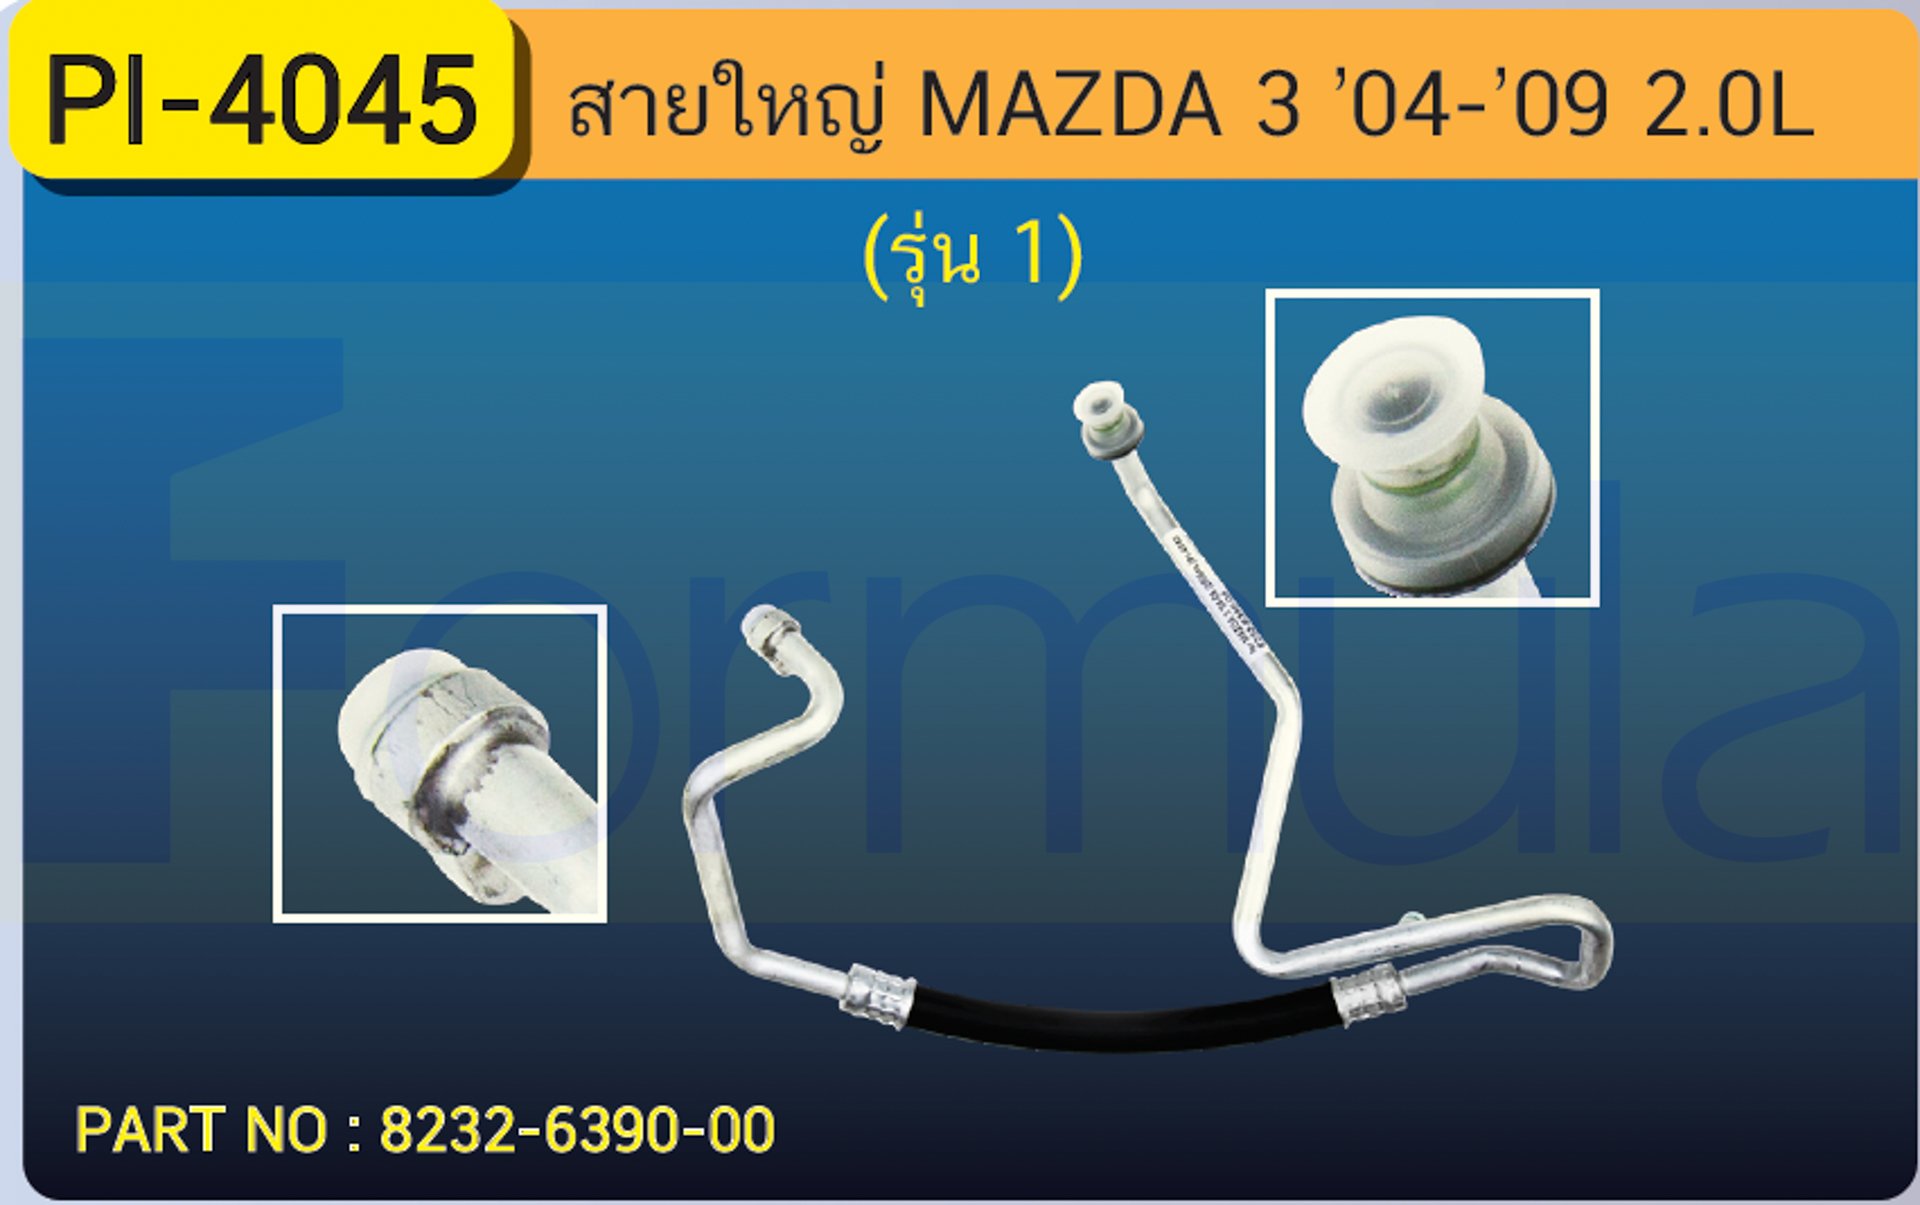 HOSE 5/8" MAZDA 3 '04-'09 (2000cc.)(134a) รุ่น 1